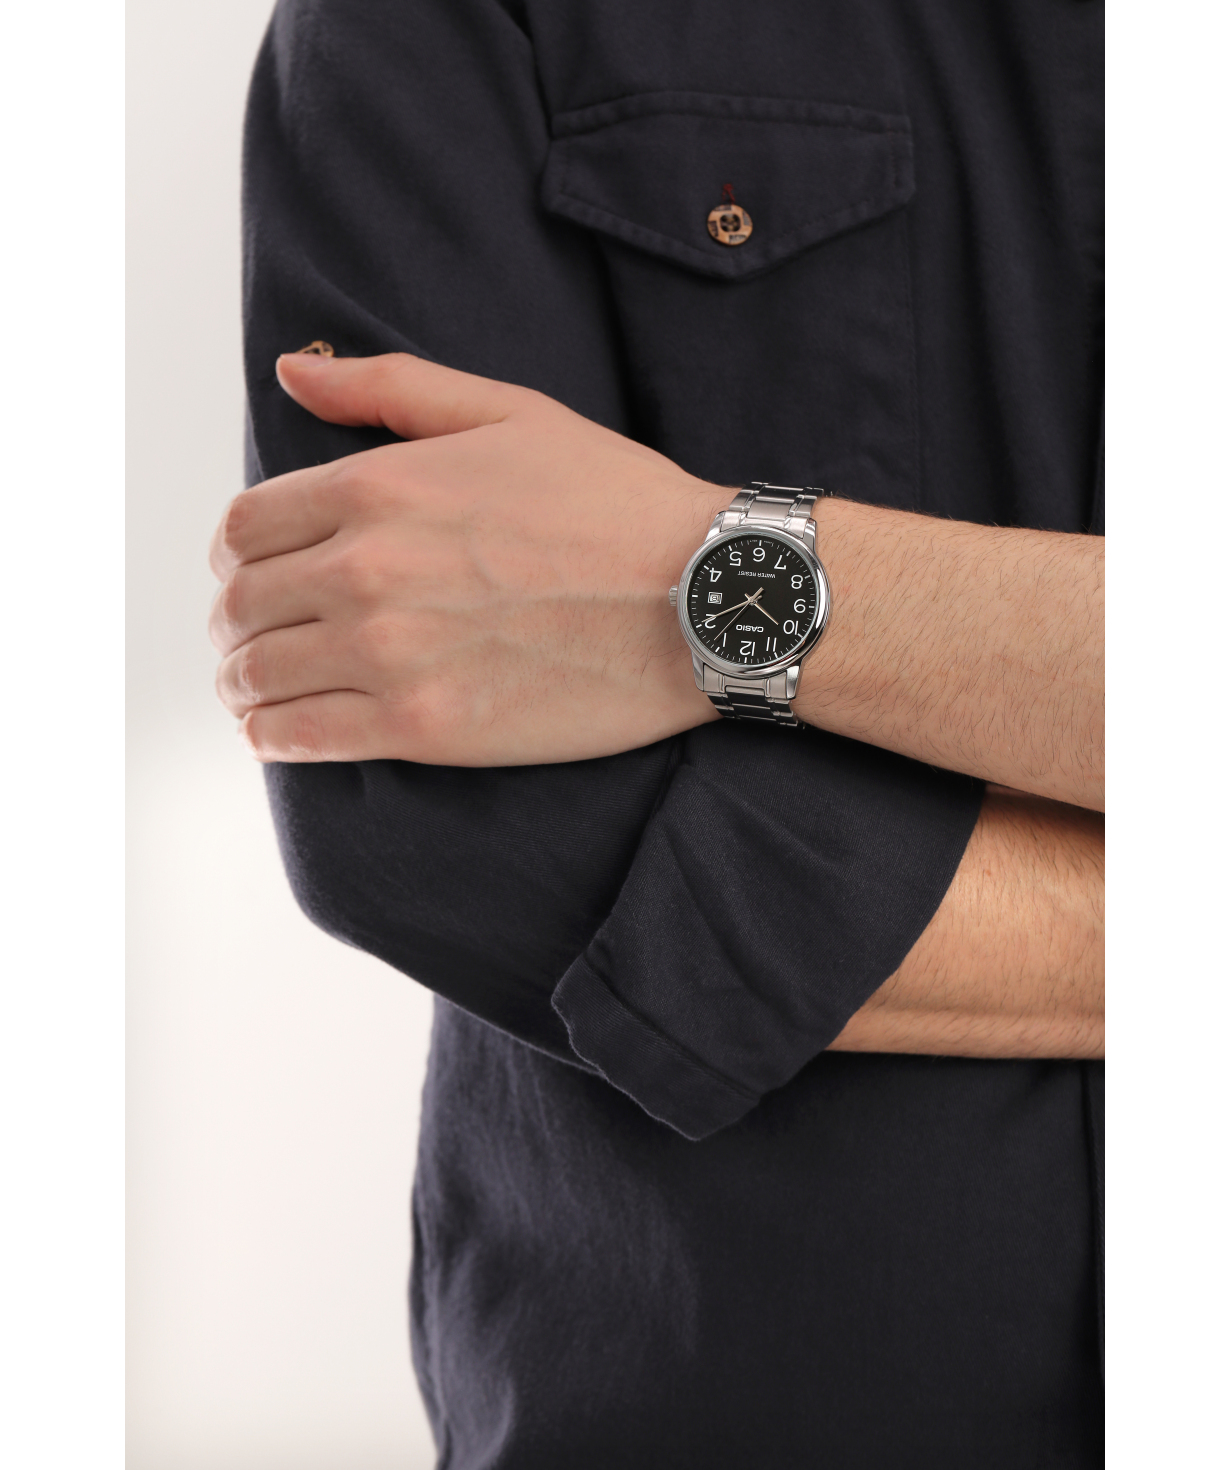 Ժամացույց  «Casio» ձեռքի  MTP-V002D-1BUDF